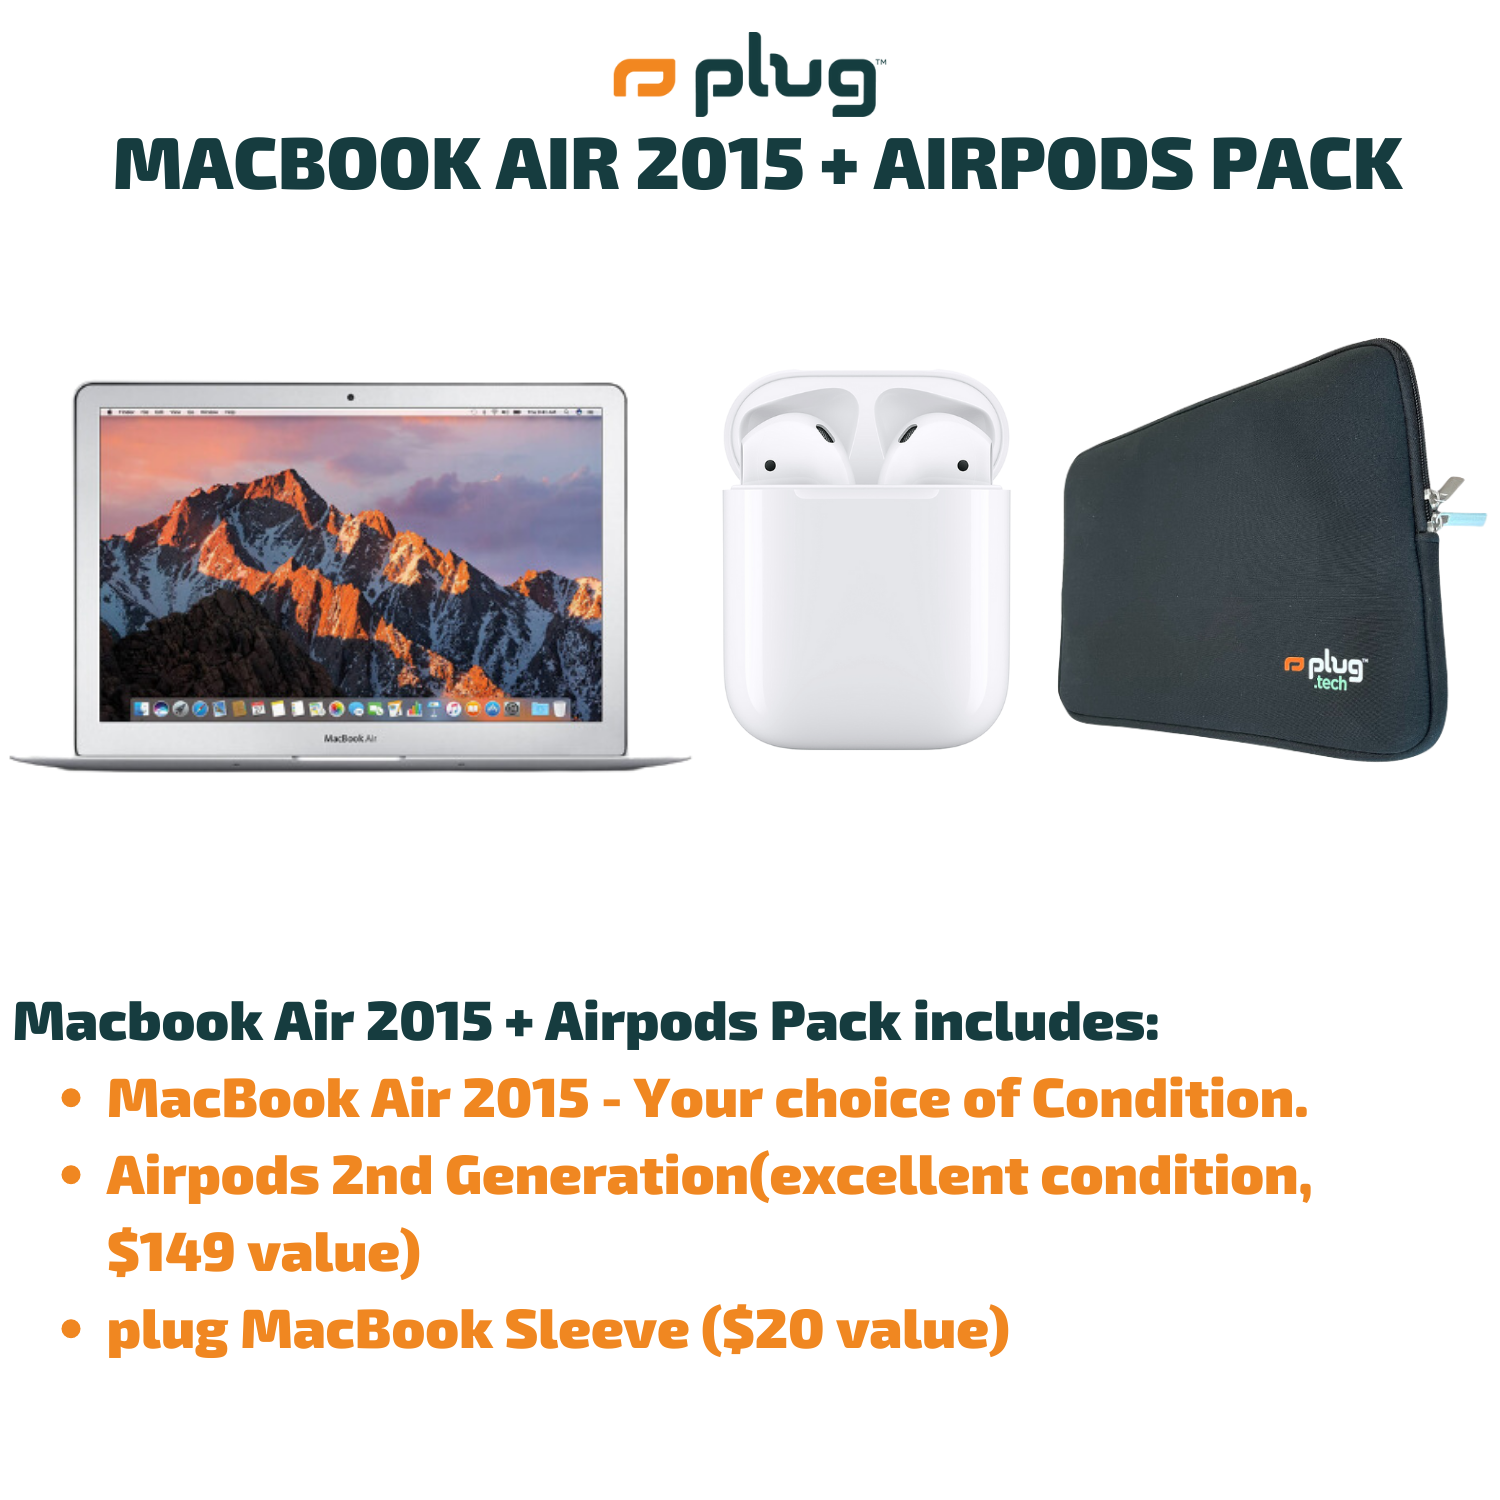 macbook air 2015